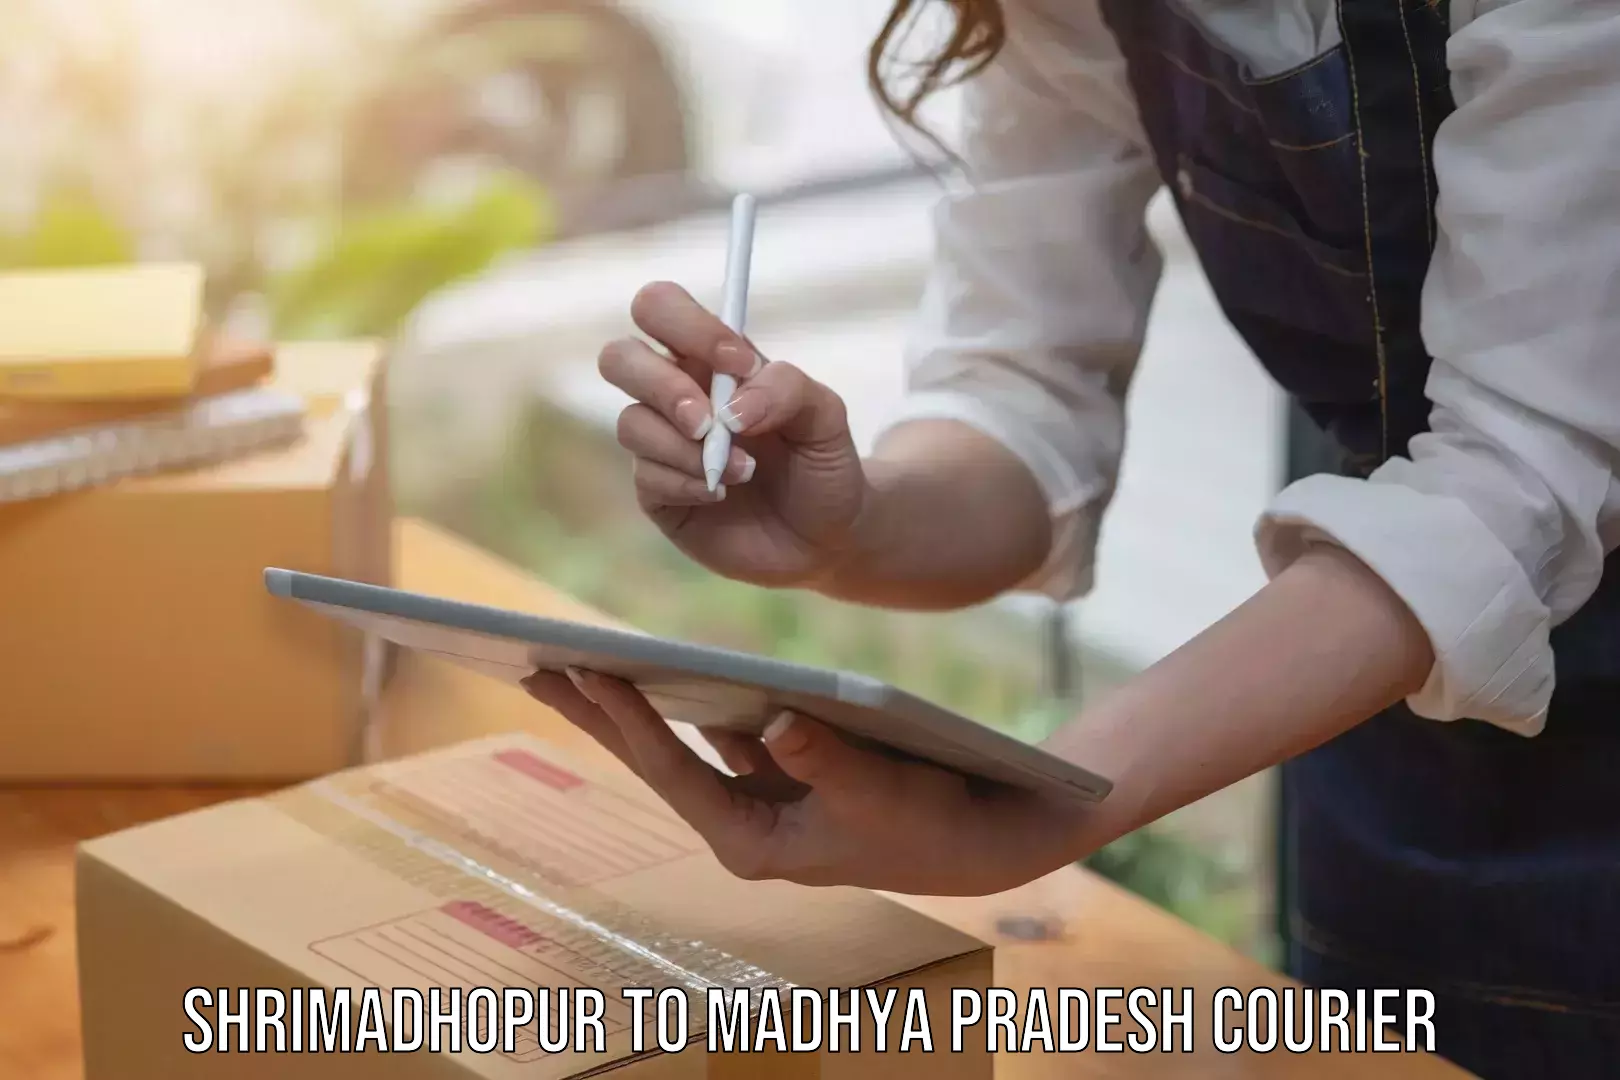 Next-day delivery options Shrimadhopur to Amanganj